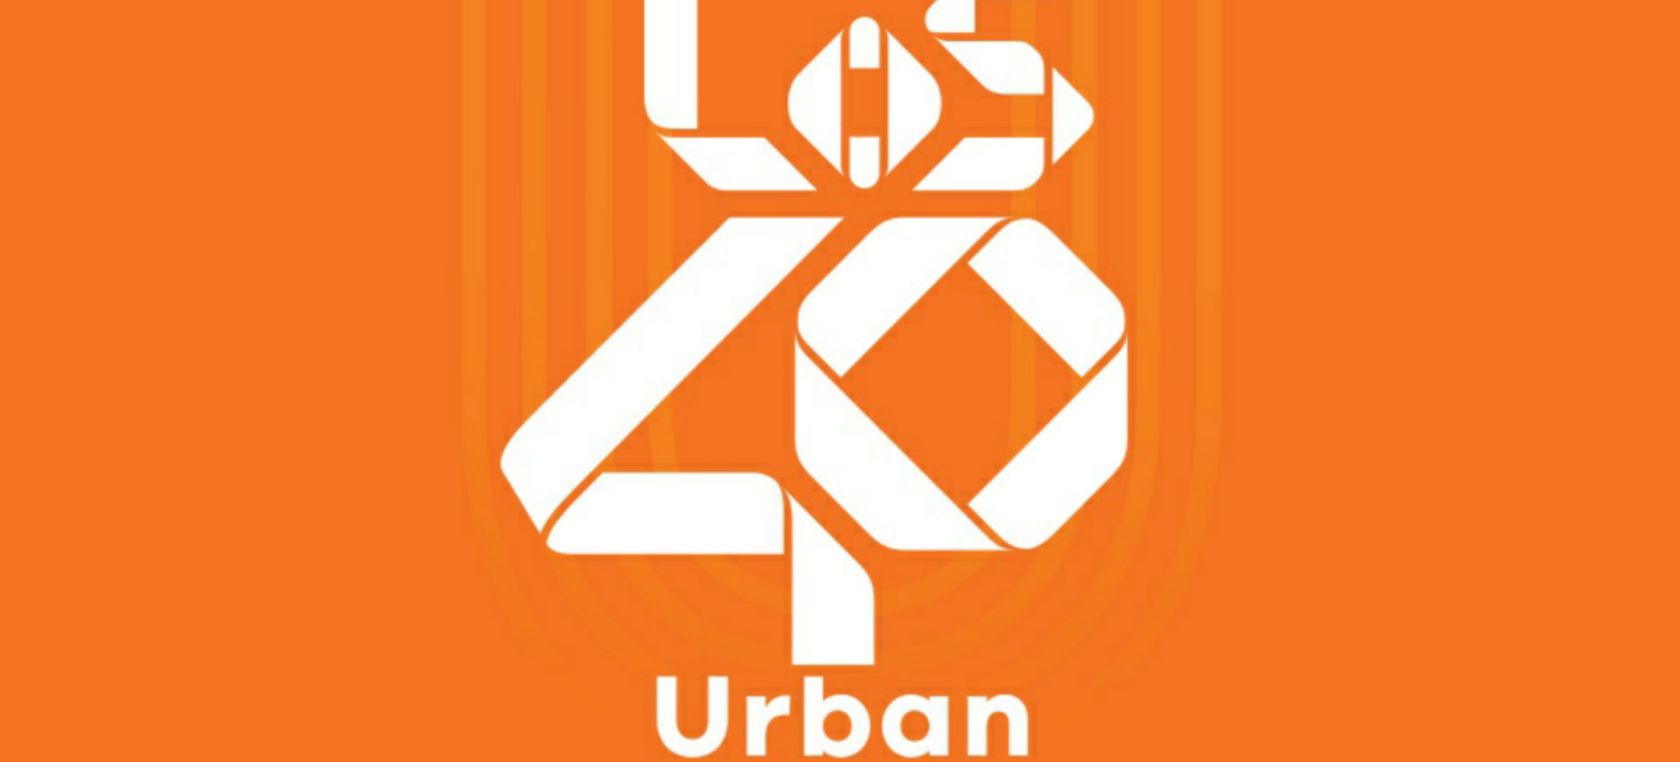 Escarpado Por Persona a cargo del juego deportivo LOS40 Urban celebra su primer aniversario y a partir de ahora llega a todas  estas ciudades | LOS40 Urban | LOS40